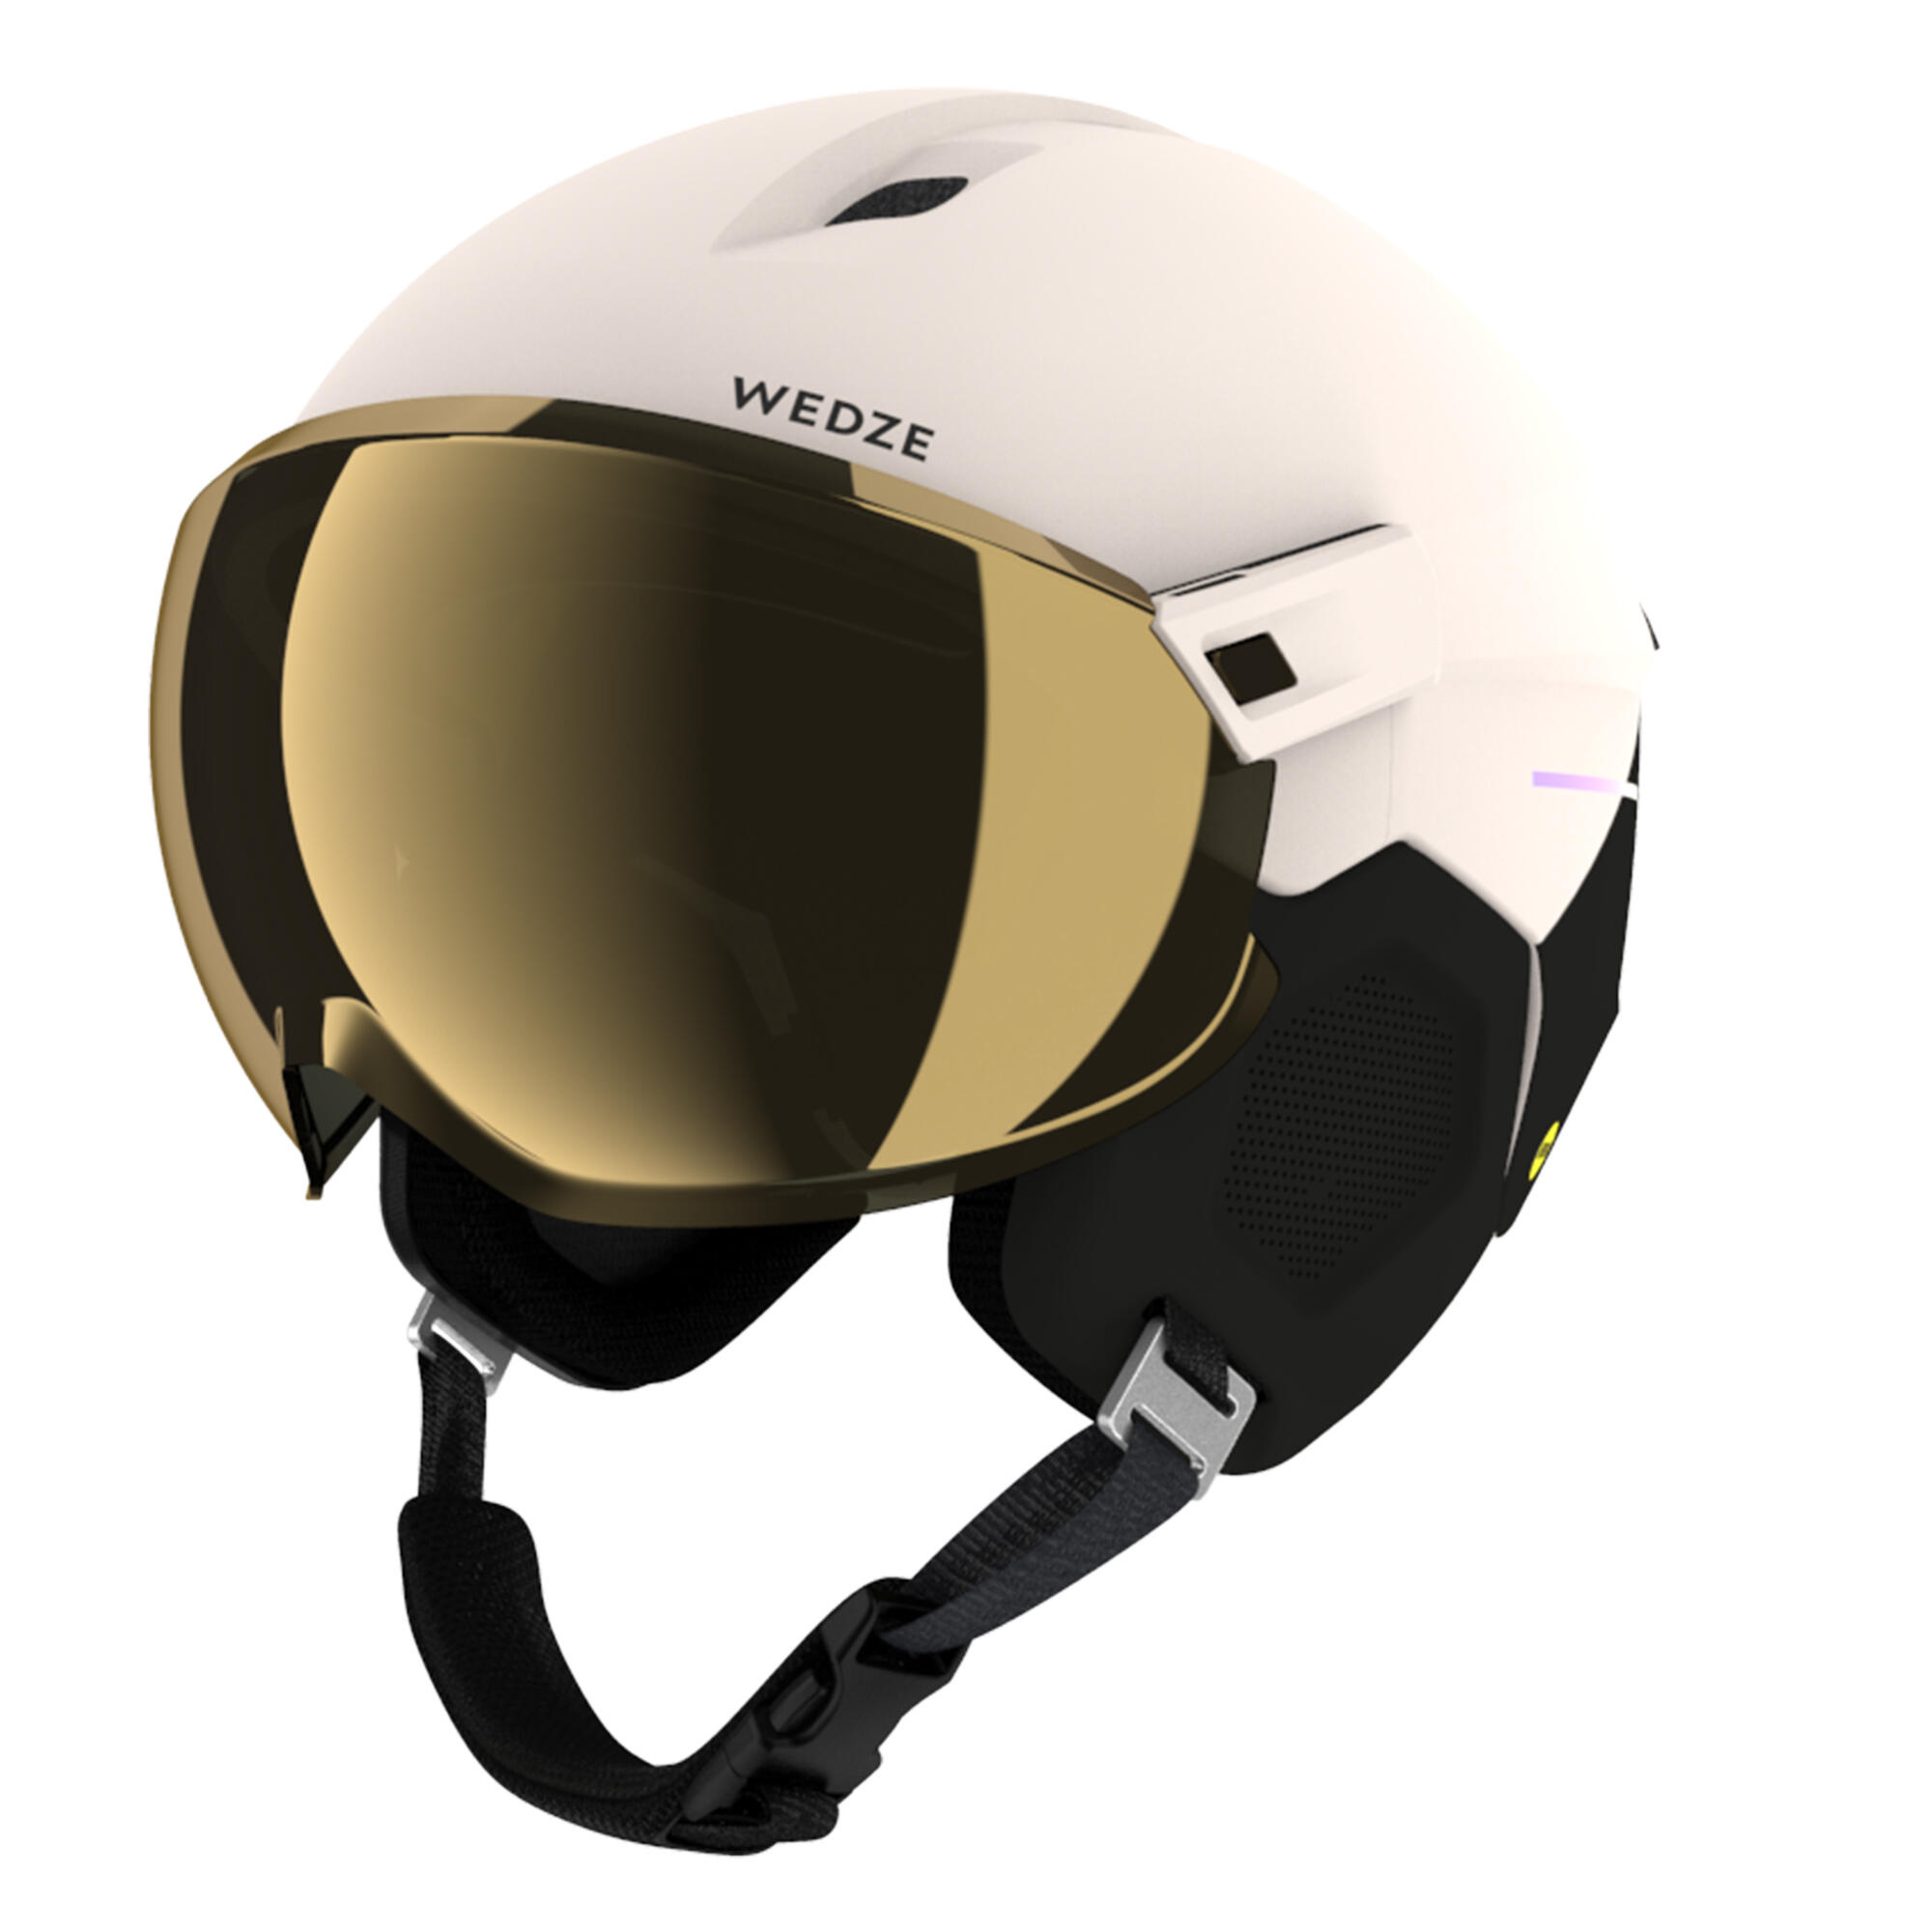 WEDZE Adult Ski Helmet with Visor - PST 950 MIPS - Beige